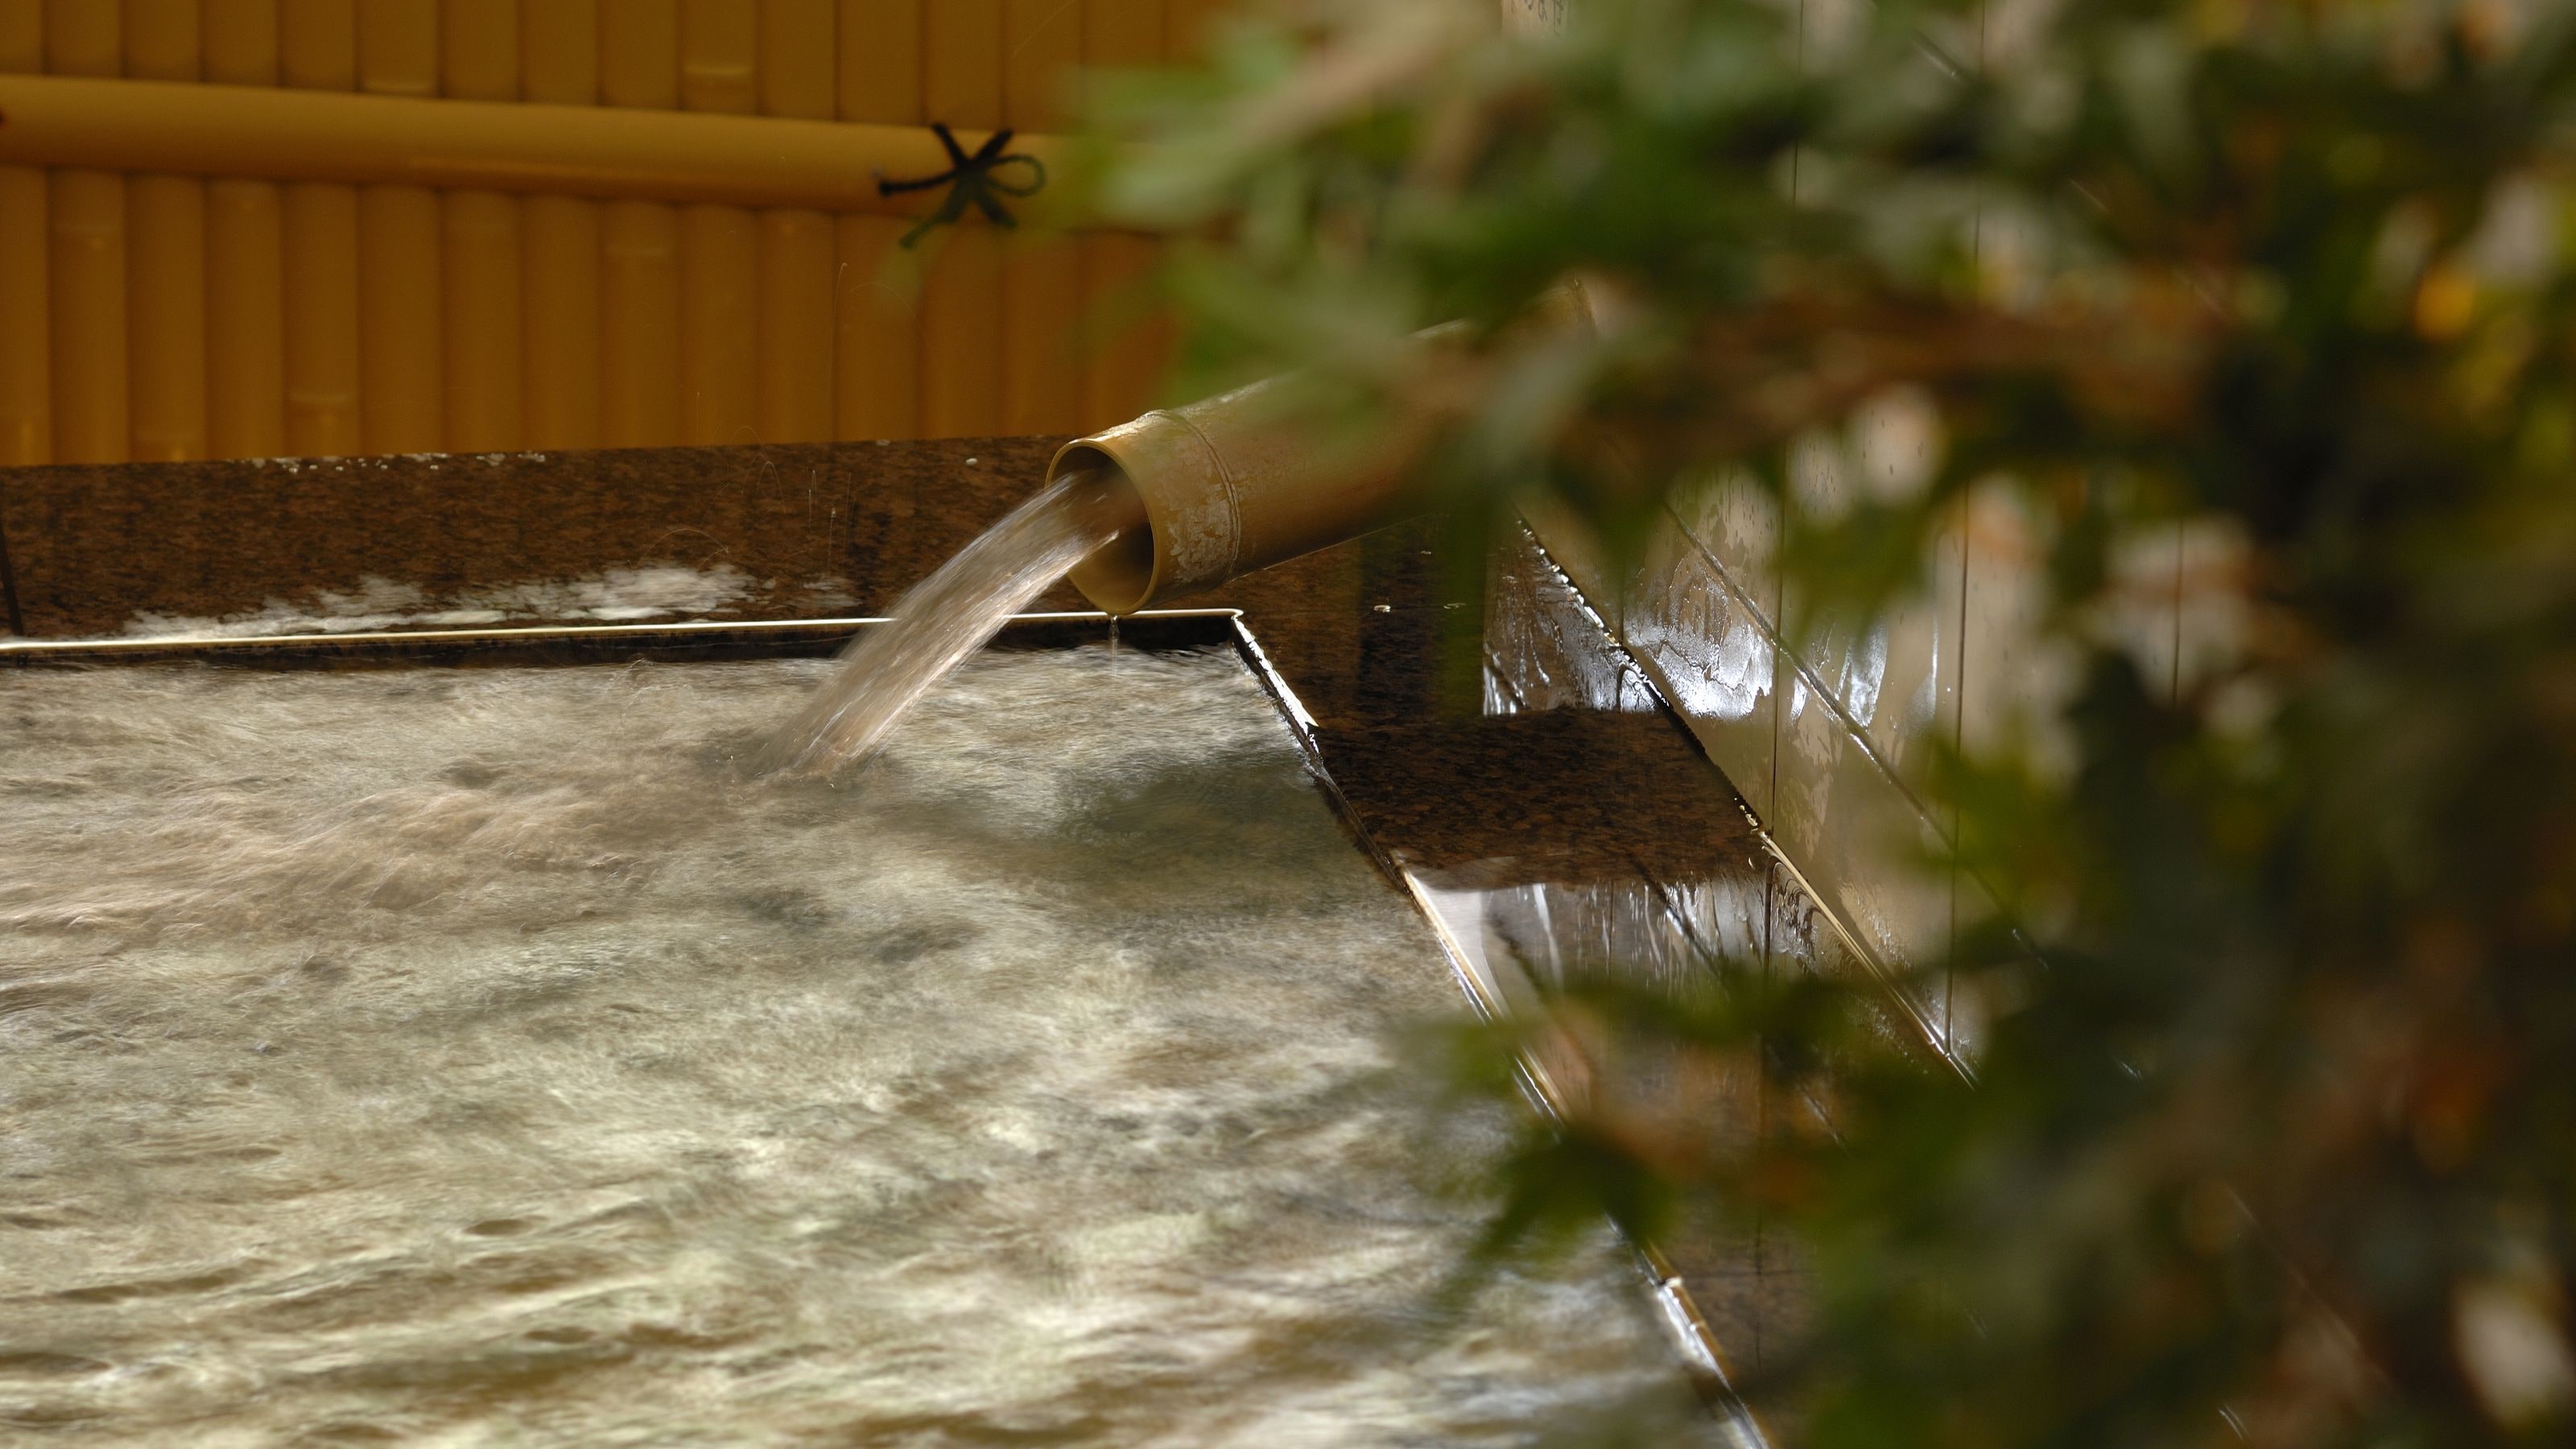 ◆ 道后温泉 拥有热水的大浴场。这是一个宽敞的结构。